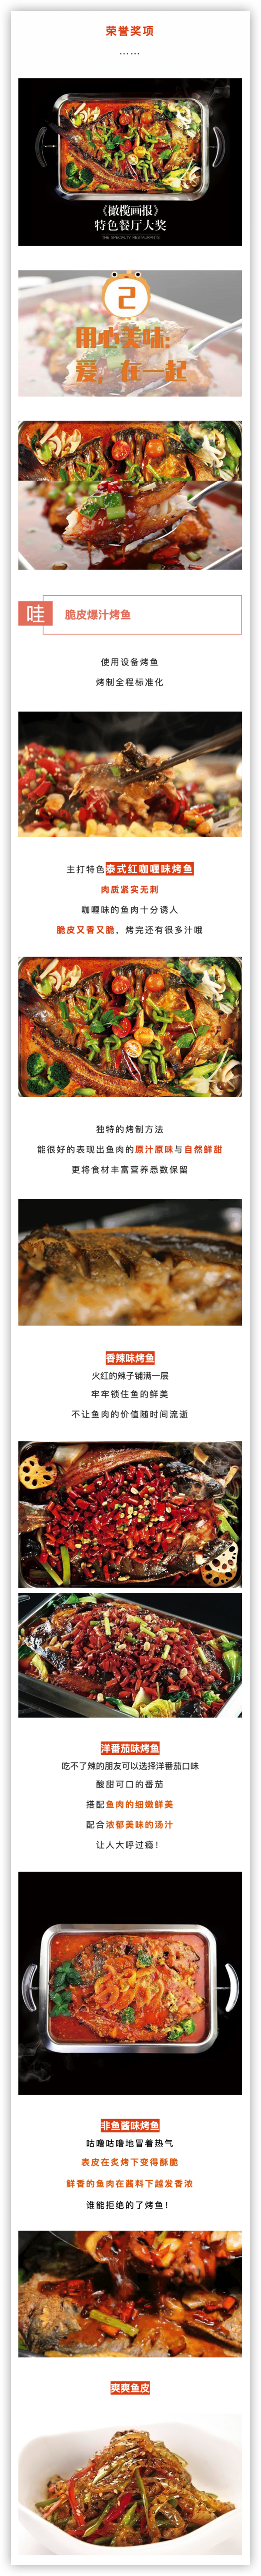 上海9店通用 158元享鱼非鱼2-3人烤鱼套餐